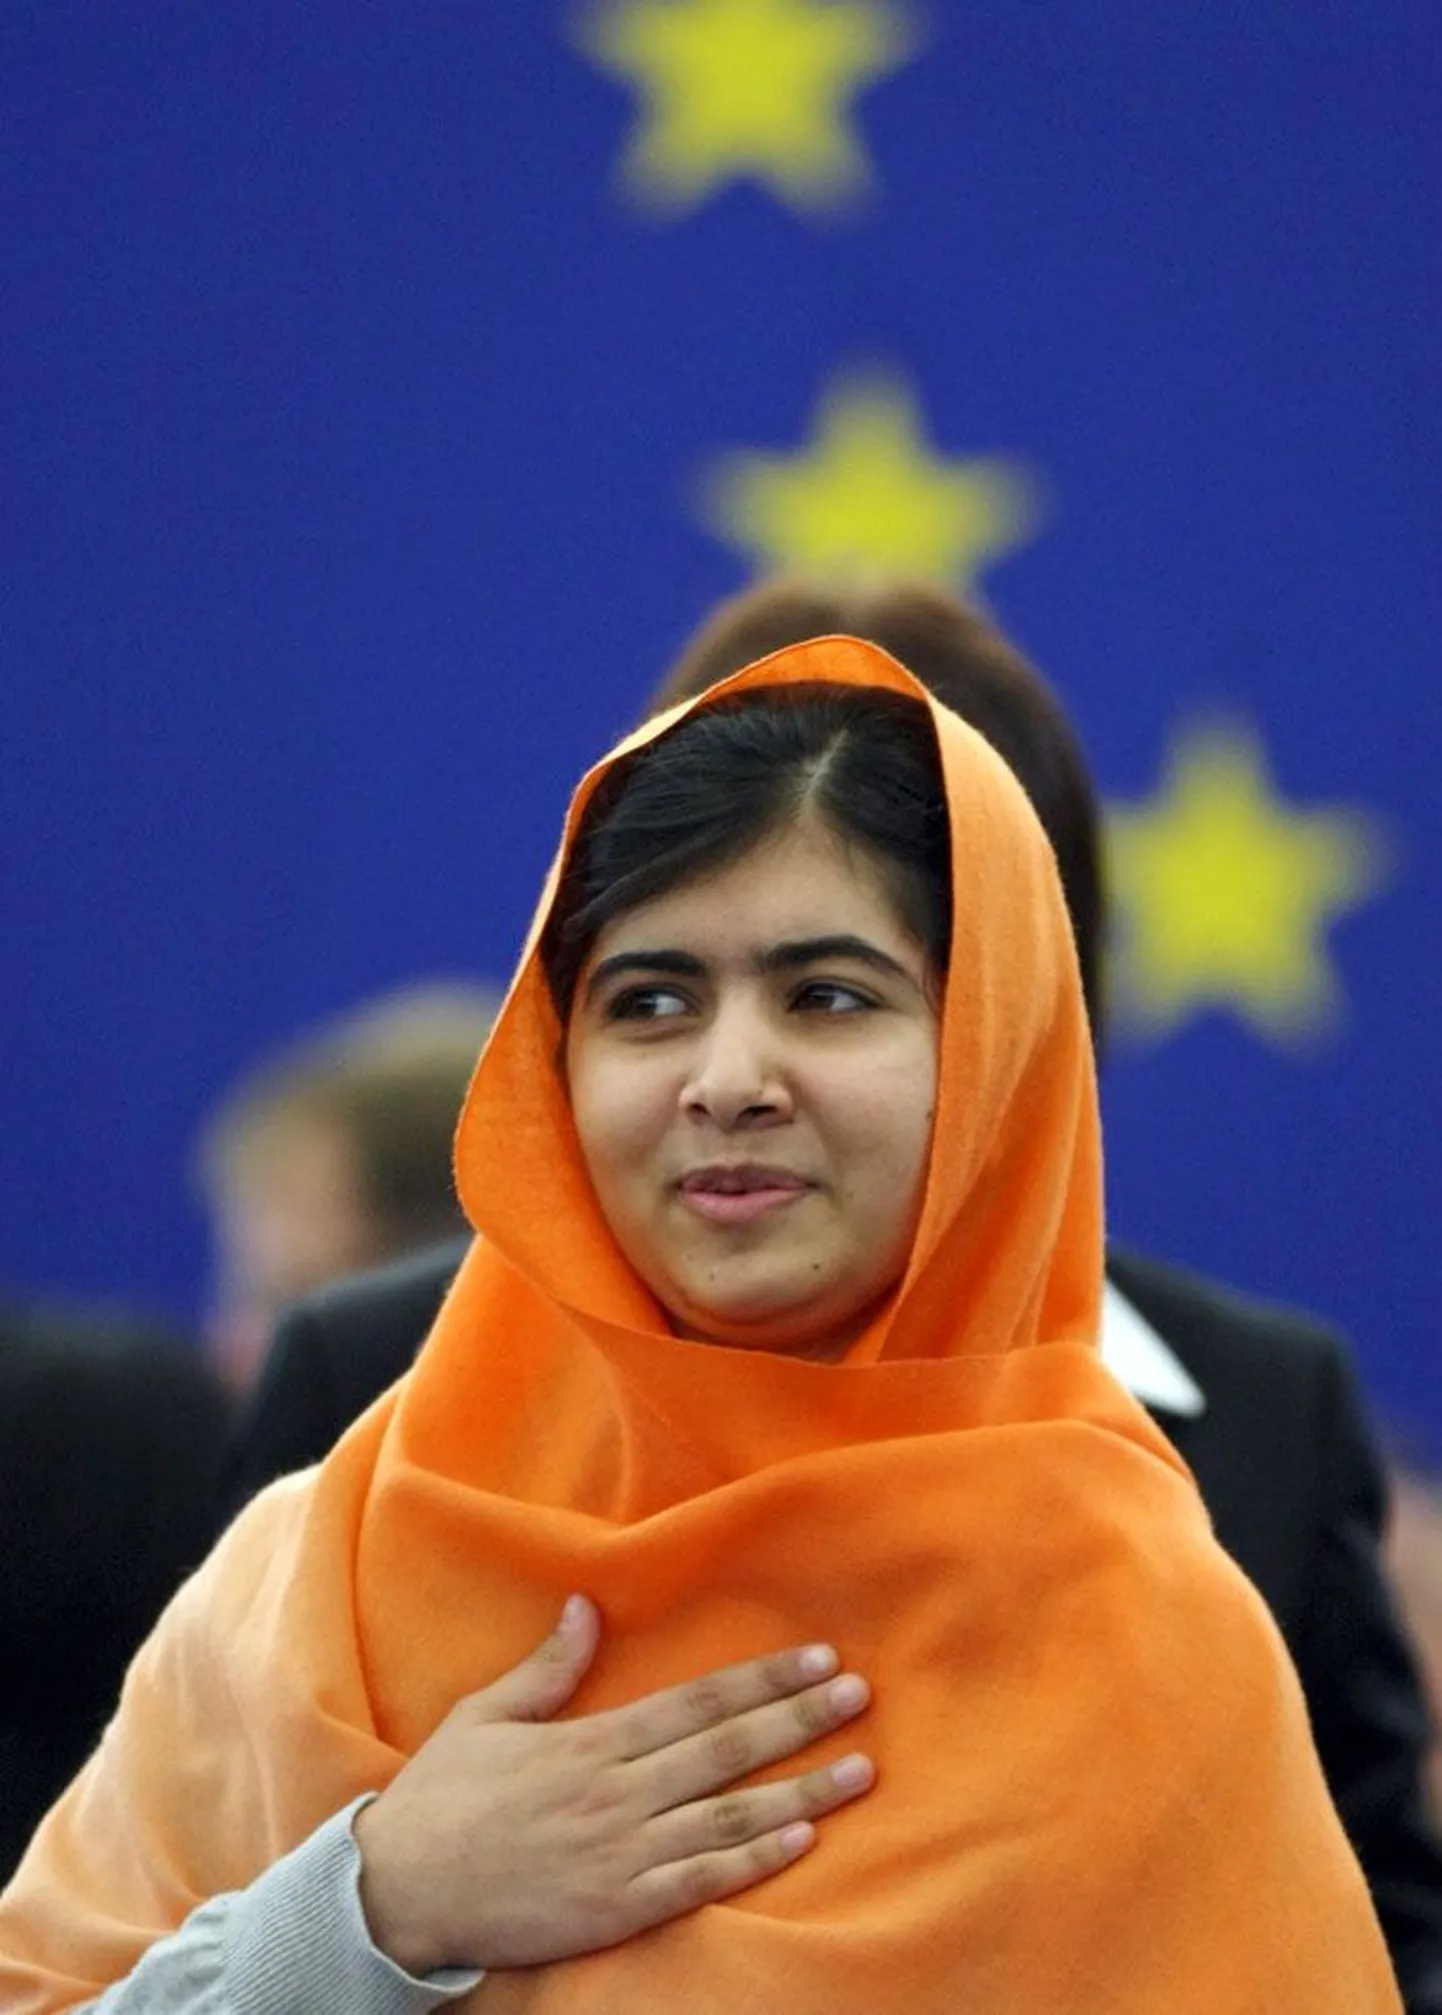 Tüdrukute koolihariduse eest seisev Malala Yousafzai meenutas auhinda vastu võttes, et paljud lapsed maailmas ei igatse mitte ilusaid asju, vaid võimalust õppida.